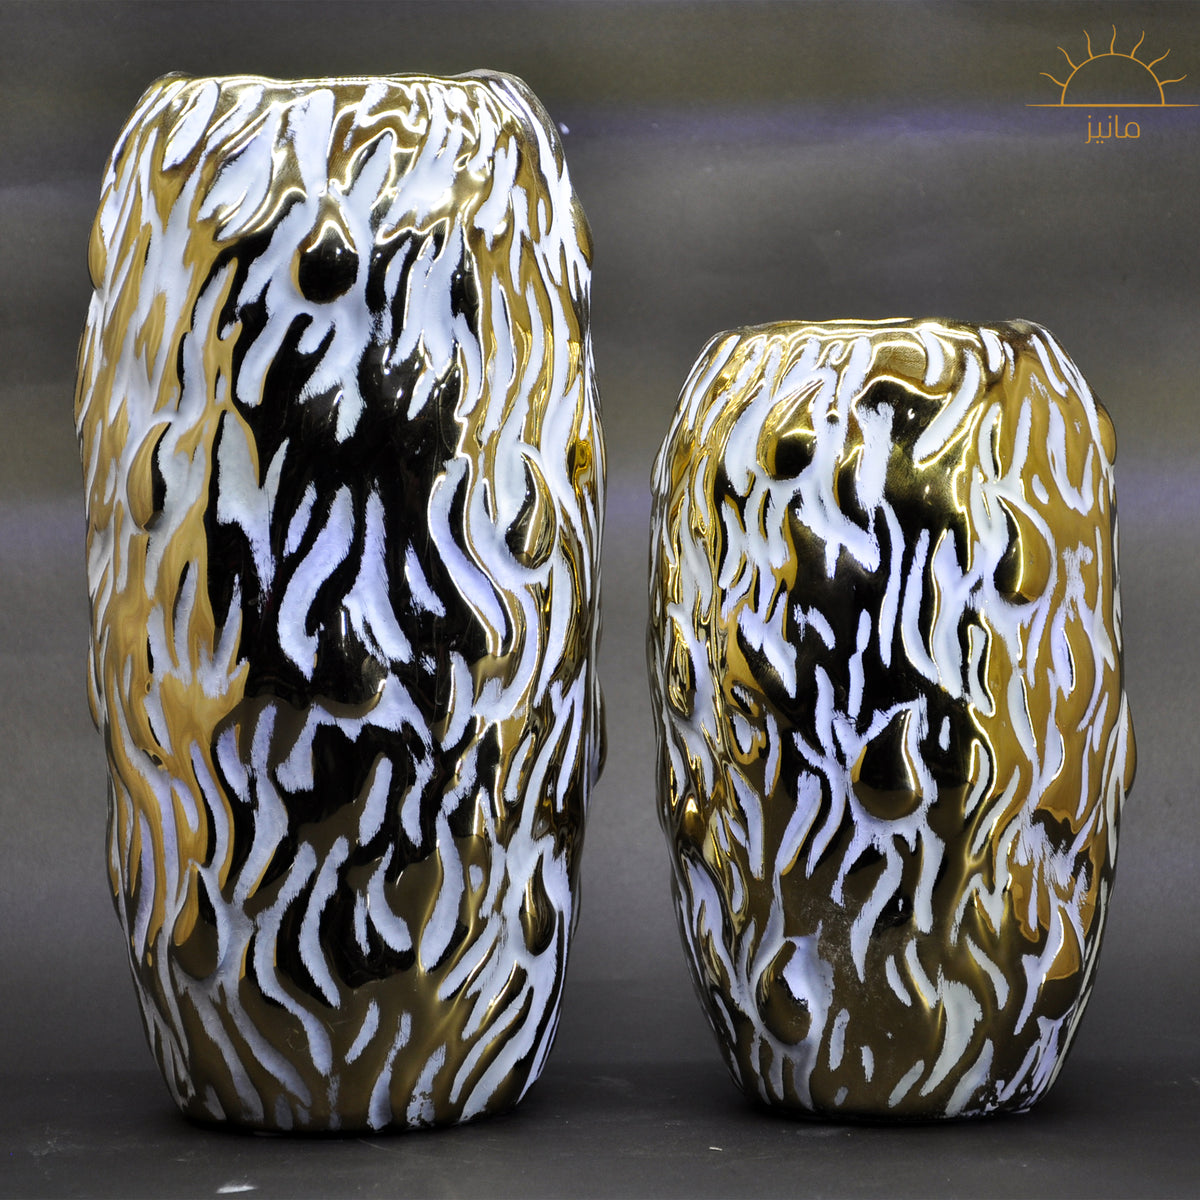 Cheetah Abstract Vase